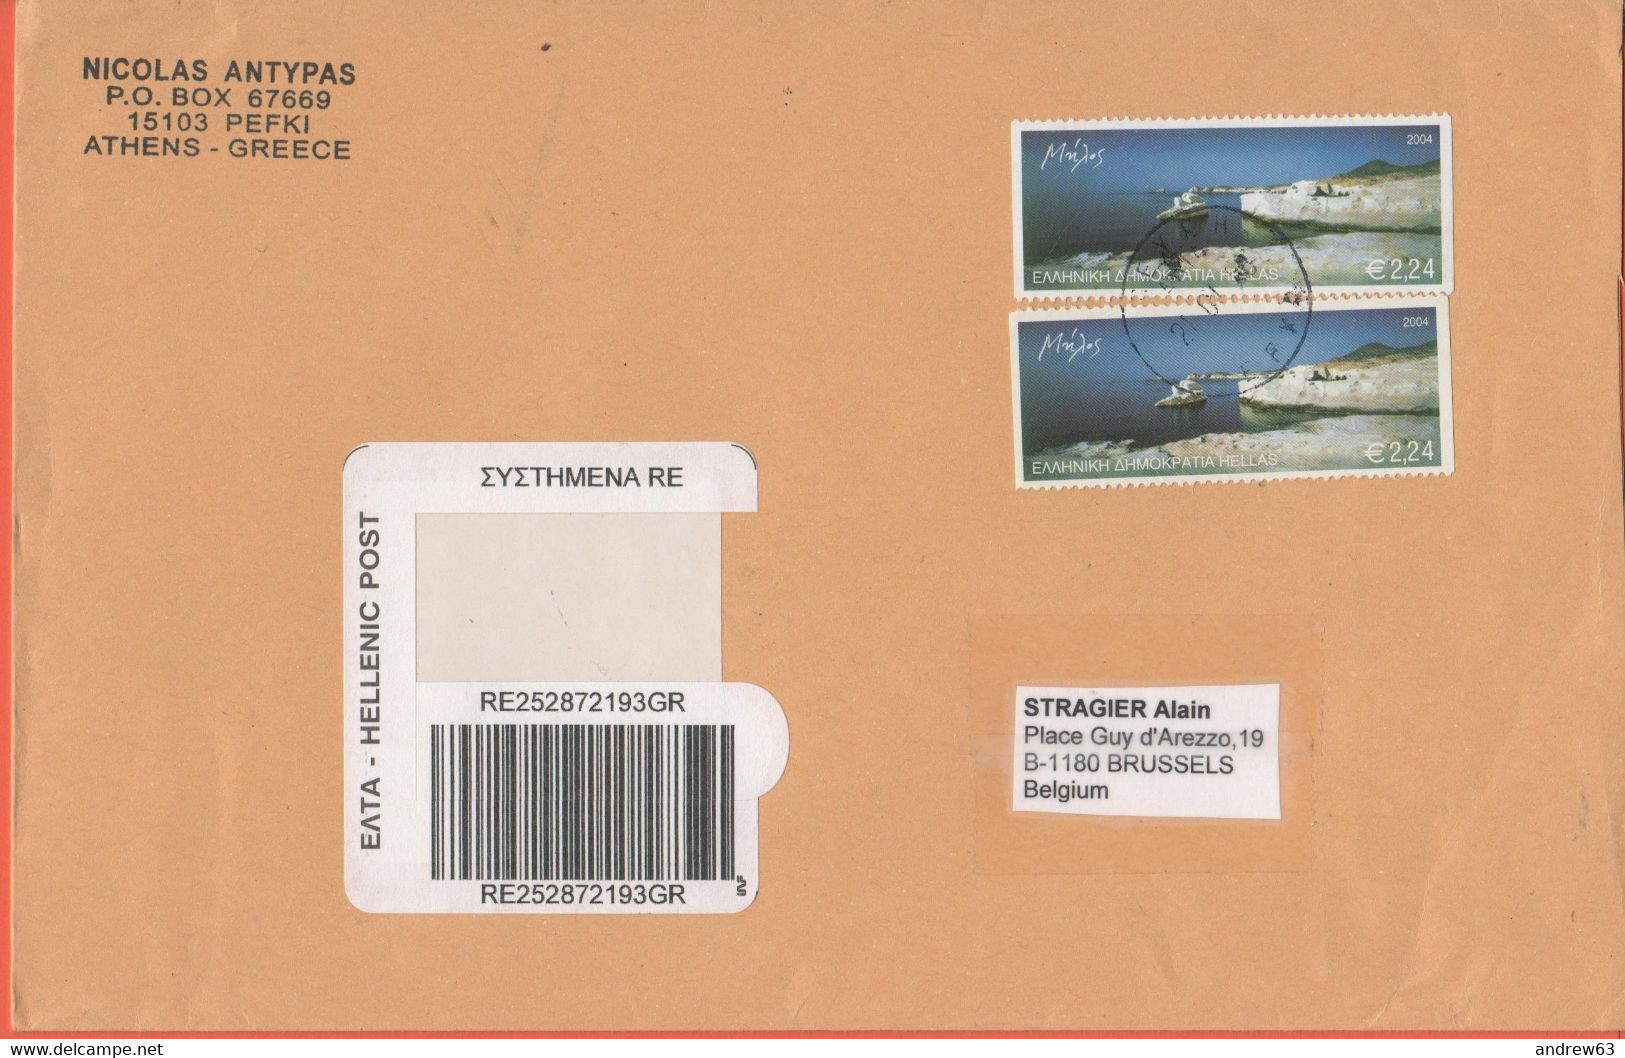 GRECIA - GREECE - GRECE - GRIECHENLAND - 2008 - 2 X Melos 2004 - Registered - Medium Envelope - Viaggiata Da Pefki Per B - Briefe U. Dokumente